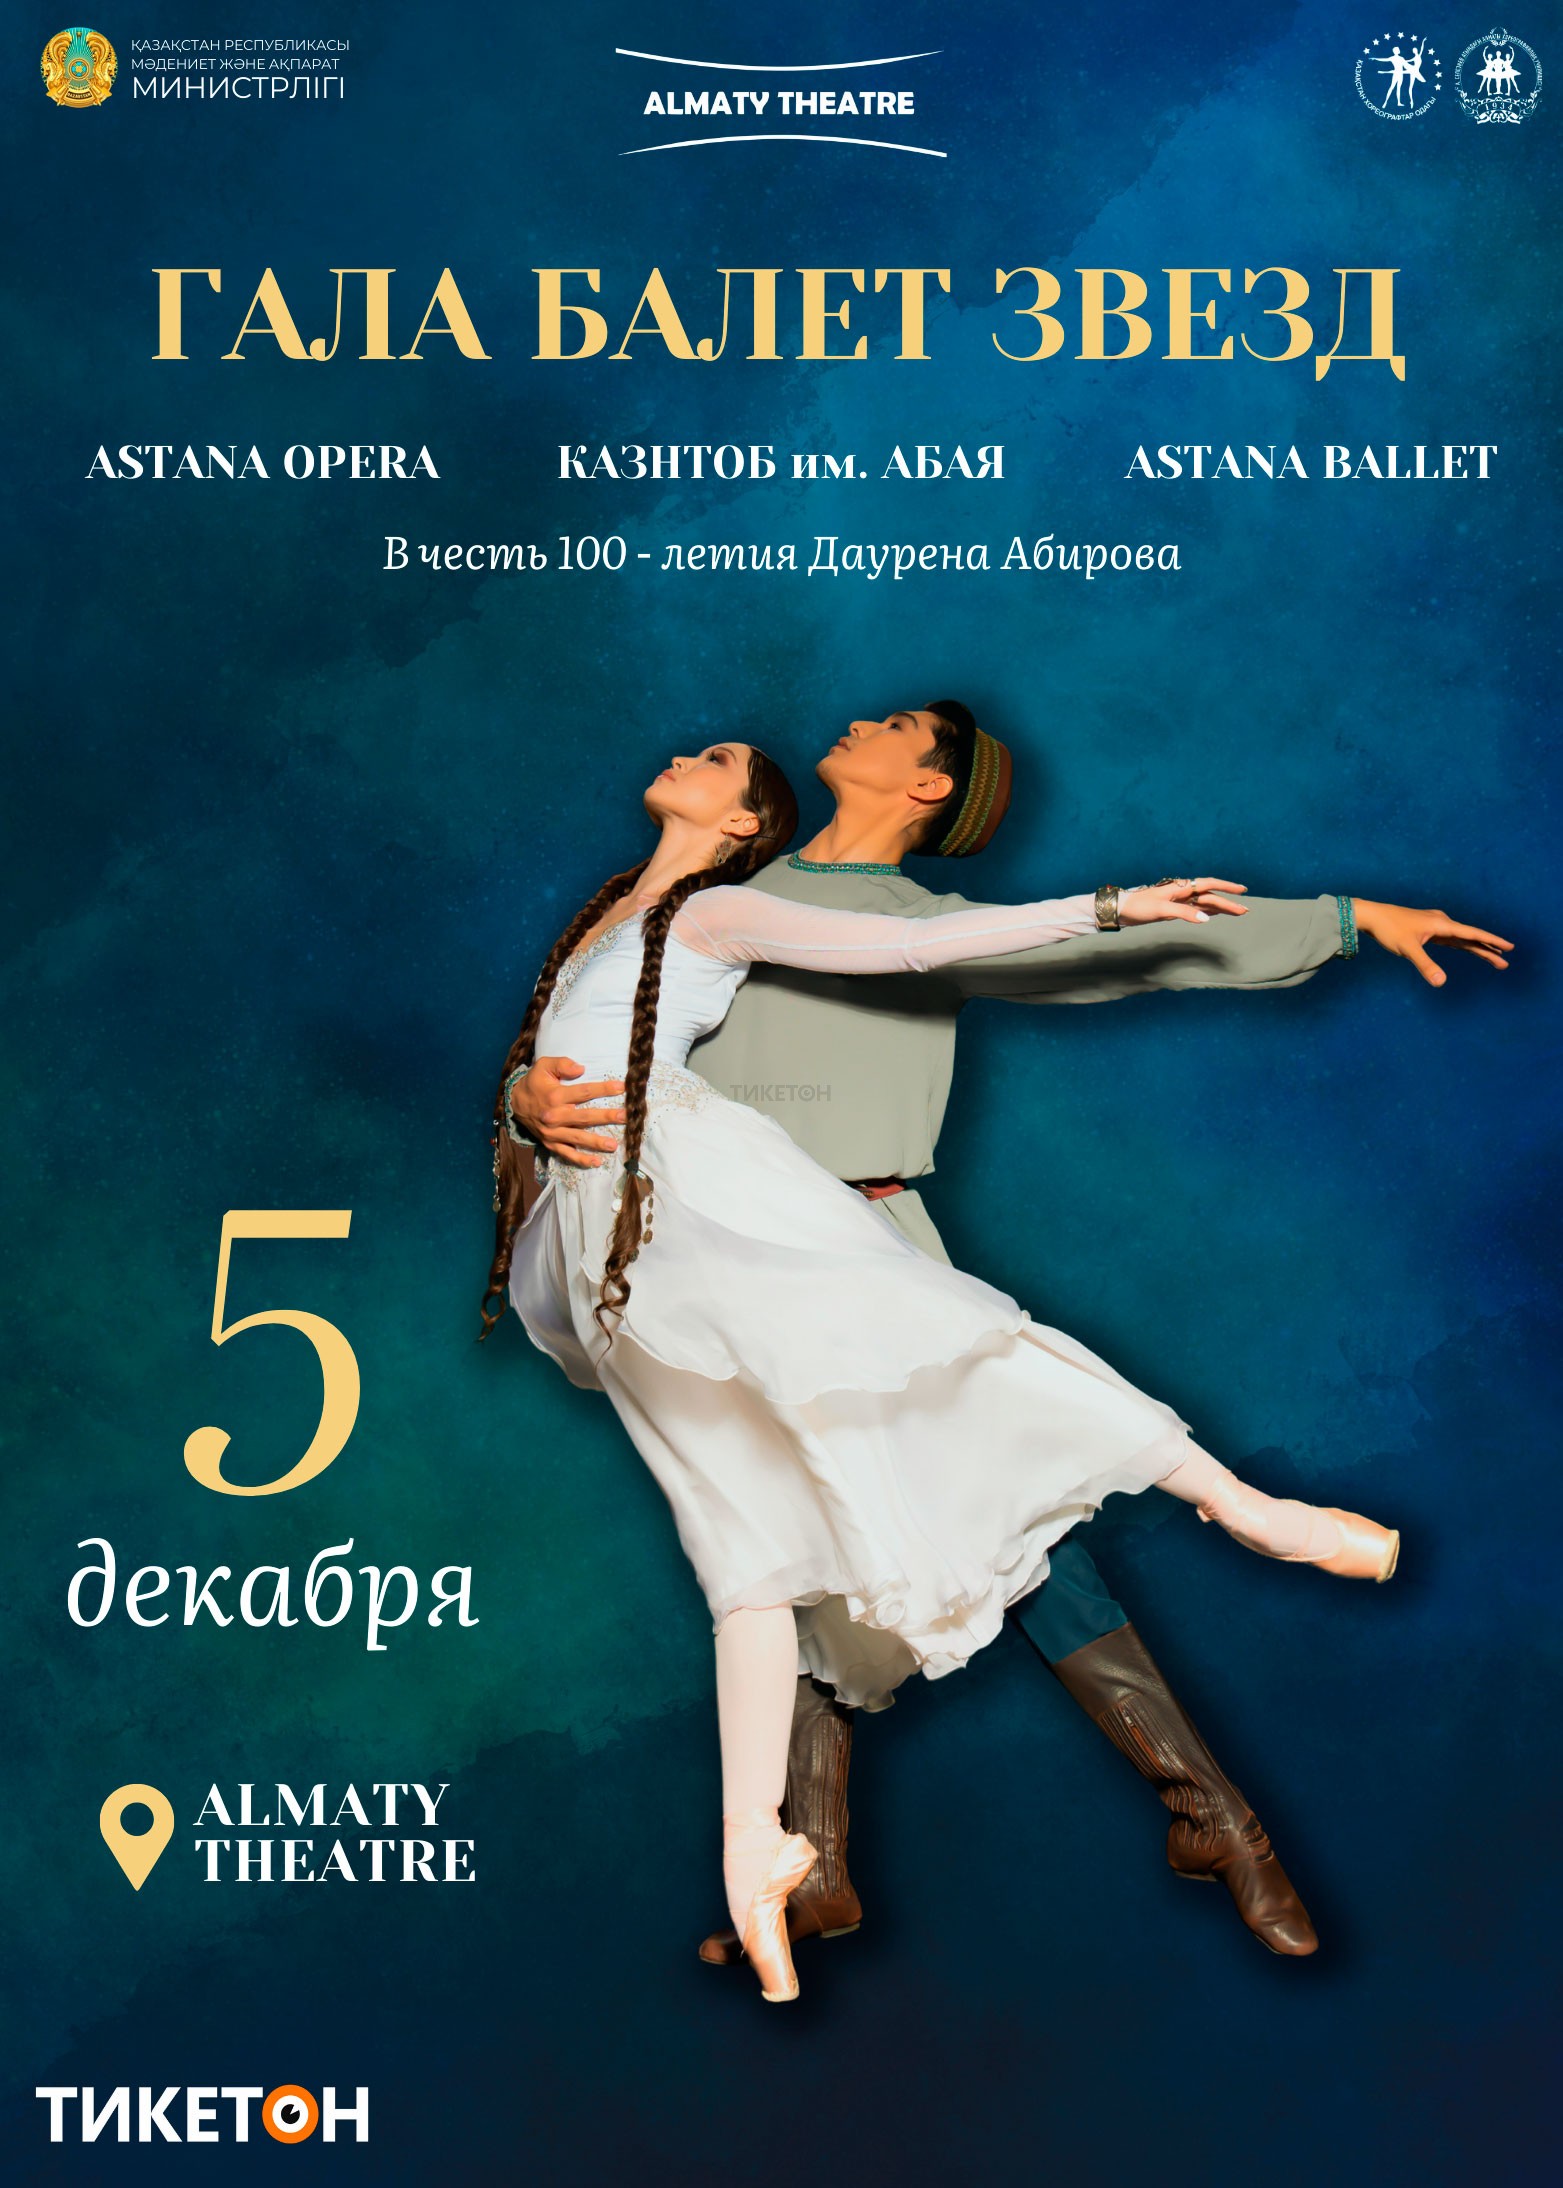 Гала балет звезд в Almaty Theatre